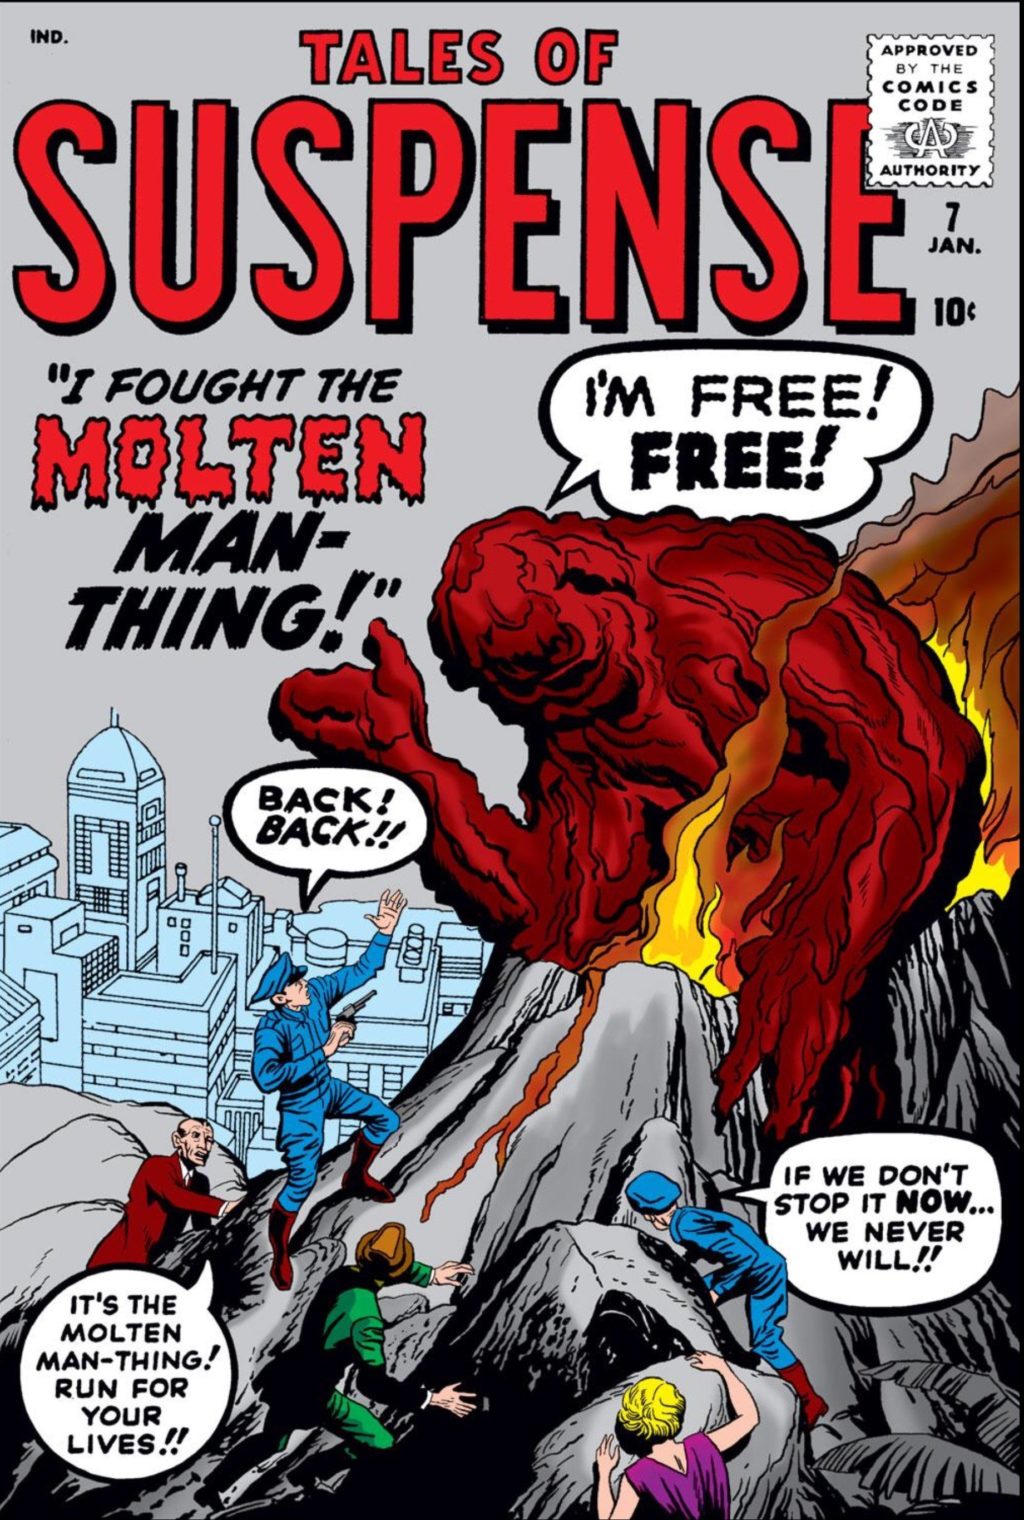 1960-man-thing-monster